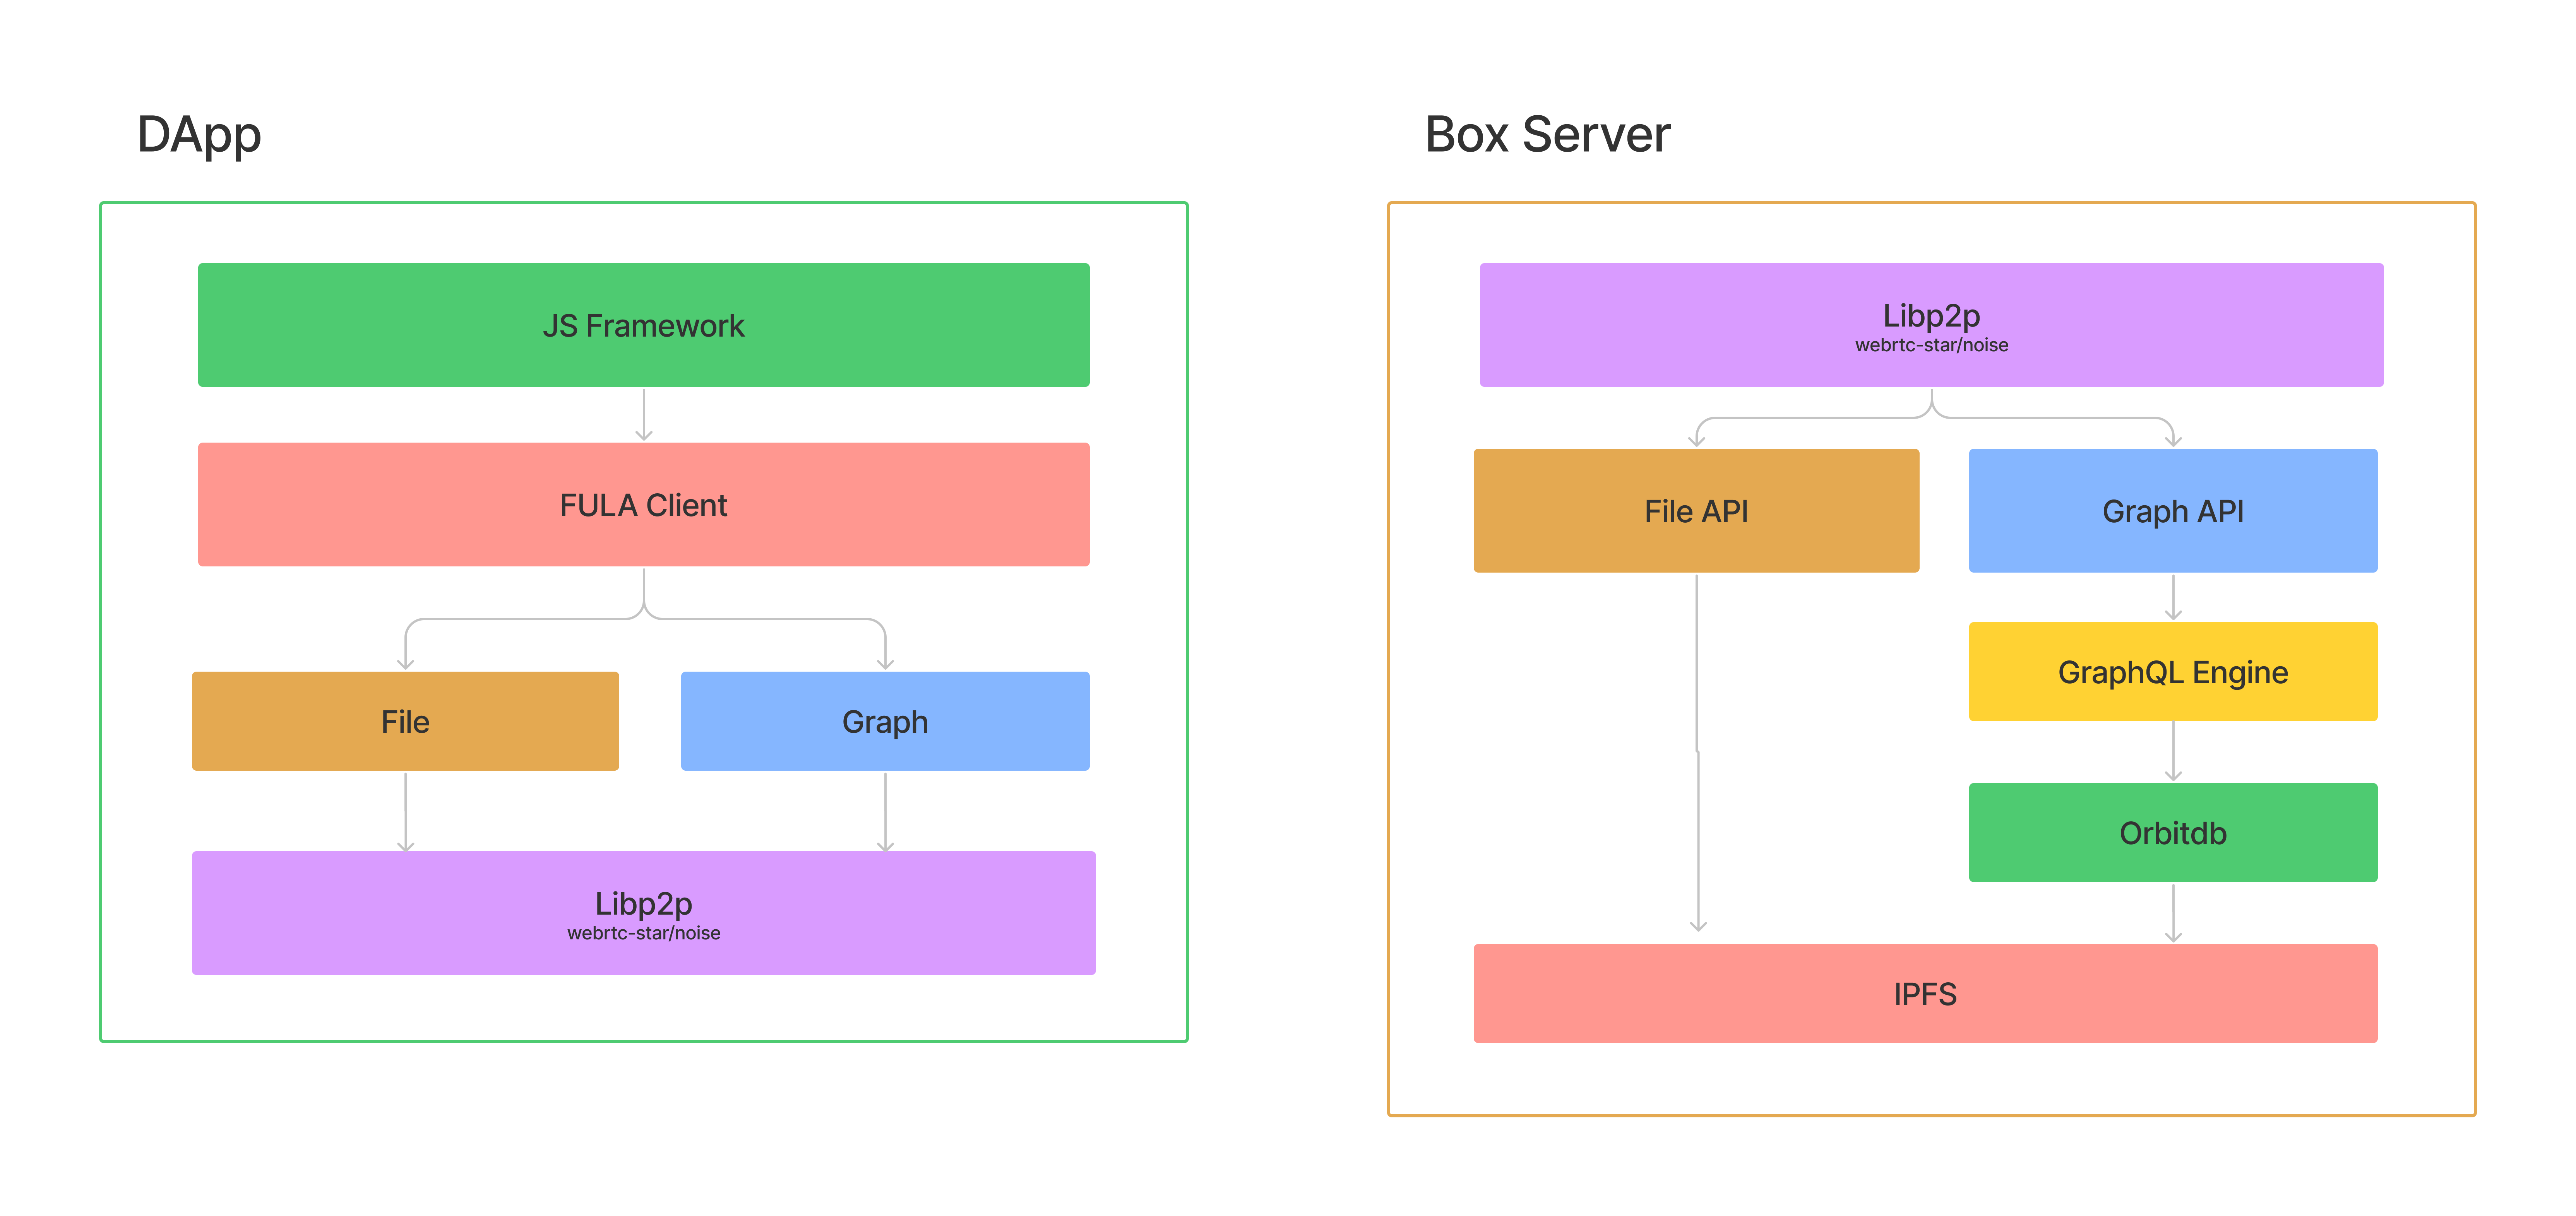 Client Box architecture